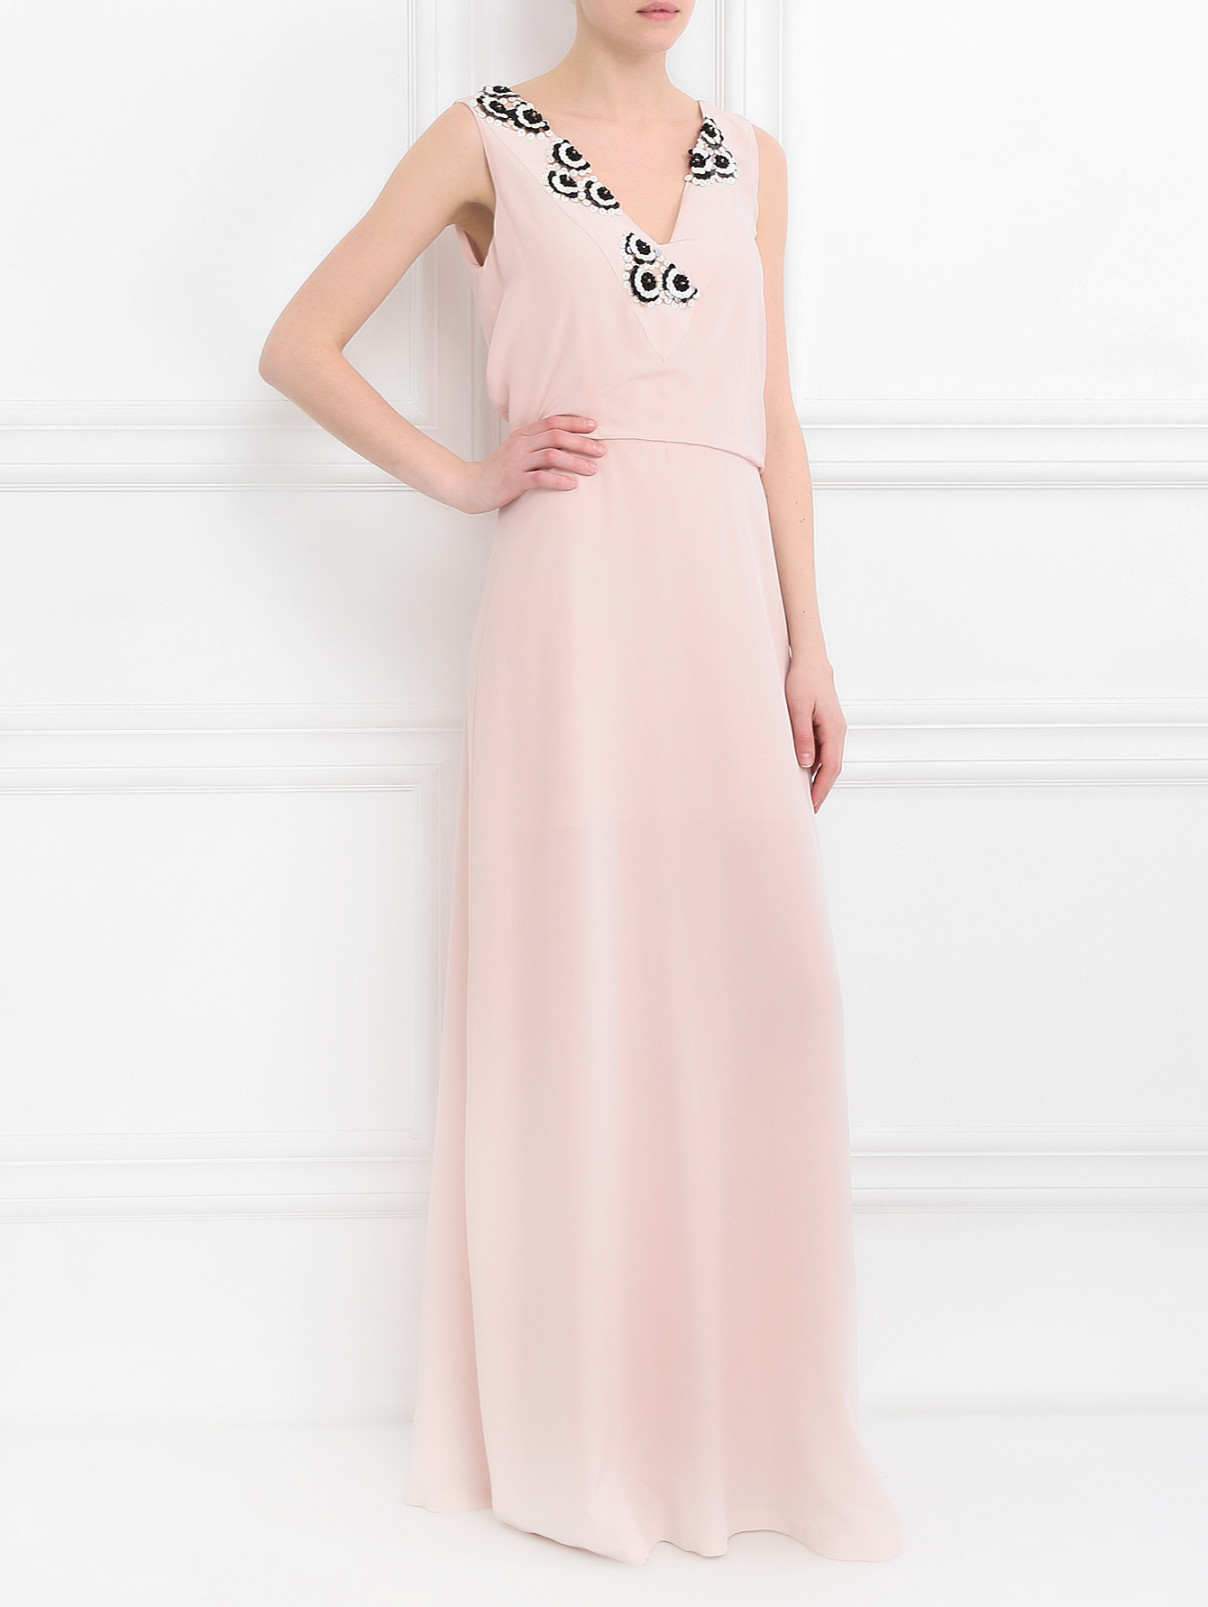 Платье-макси из шелка с аппликацией из пайеток Pianoforte  –  Модель Общий вид  – Цвет:  Розовый